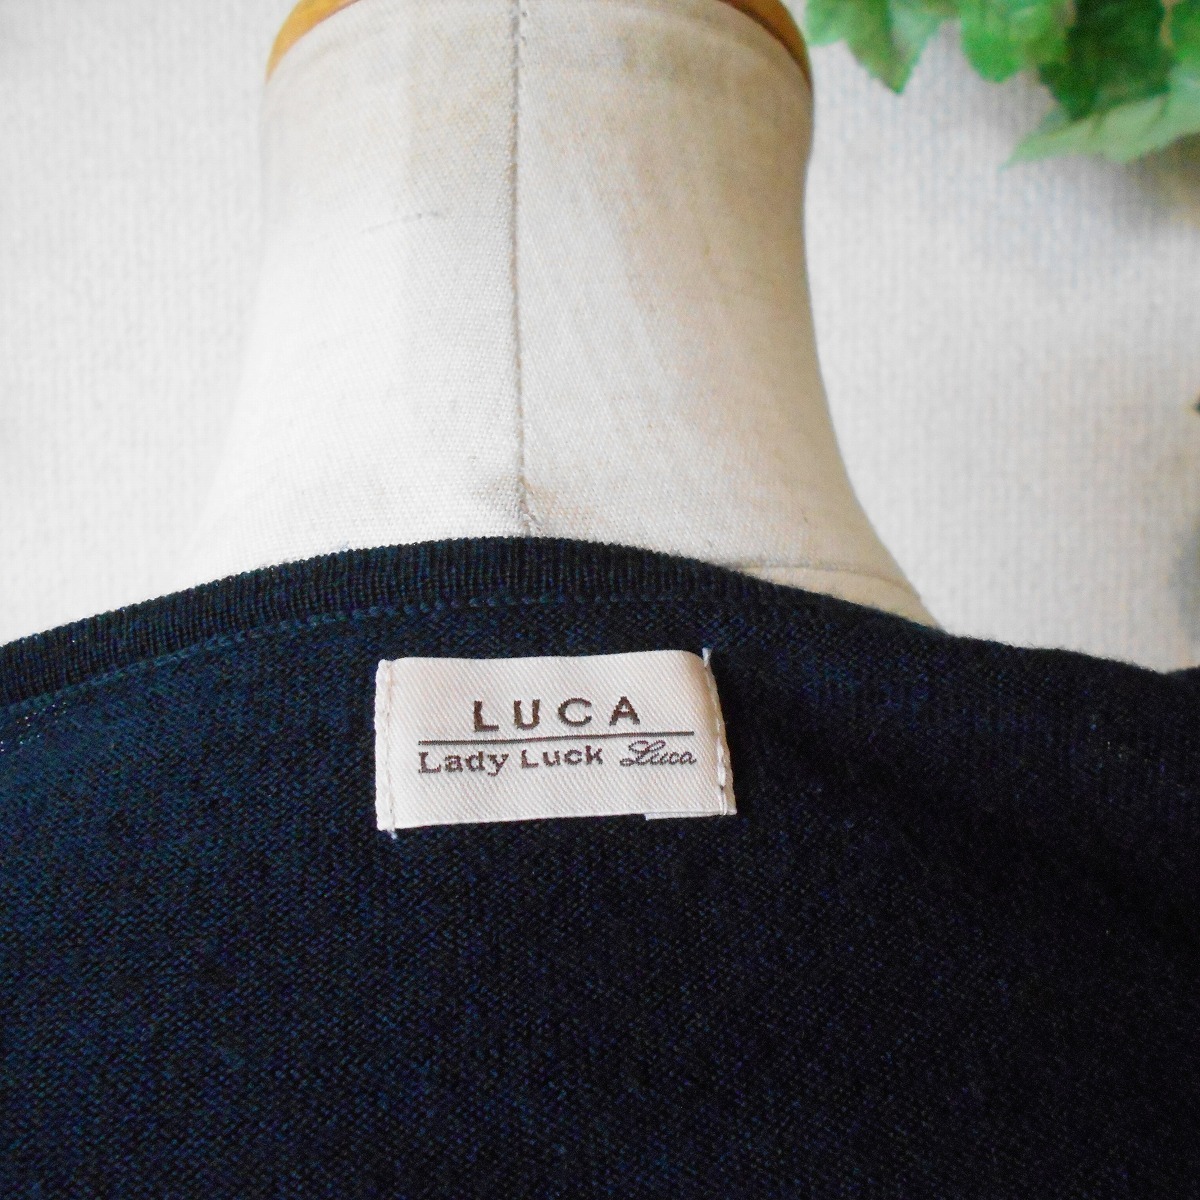 ルカ / レディ ラック ルカ LUCA / LADY LUCK LUCA 秋冬 向き レディース 用 薄手 セーター_画像7